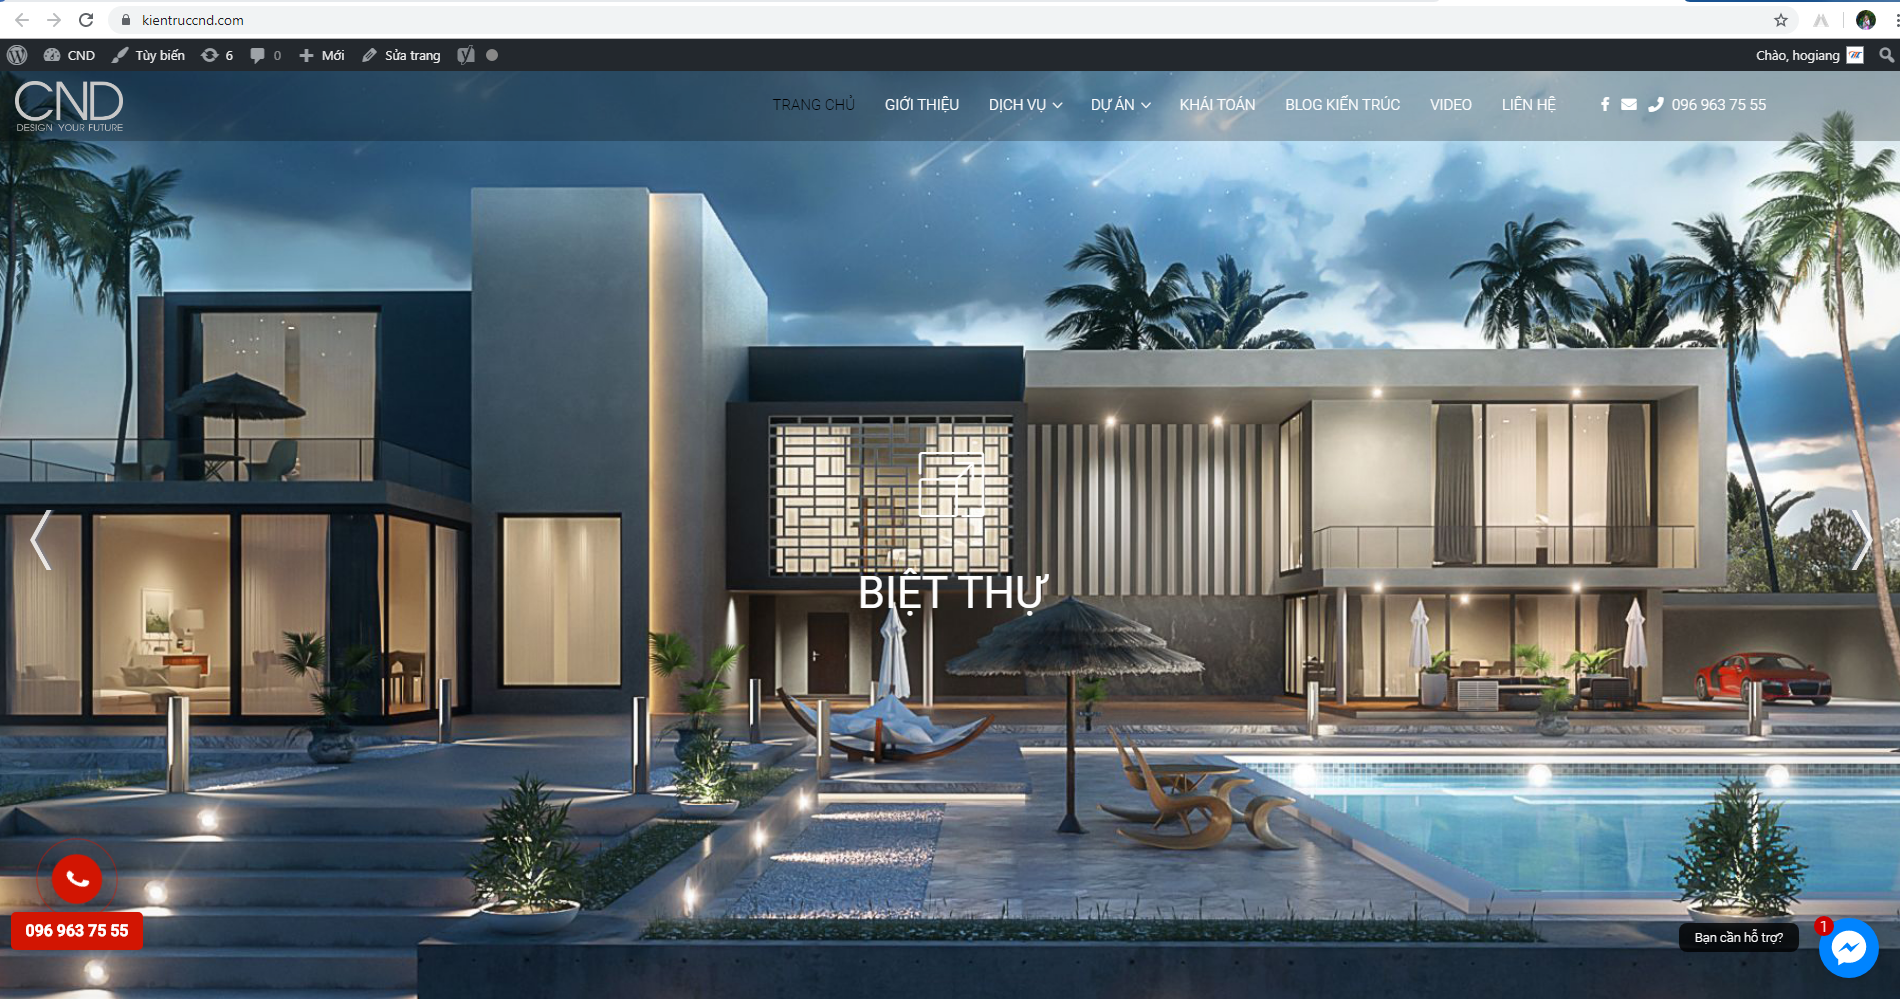 Thiết kế website kiến trúc quảng bá thương hiệu của bạn